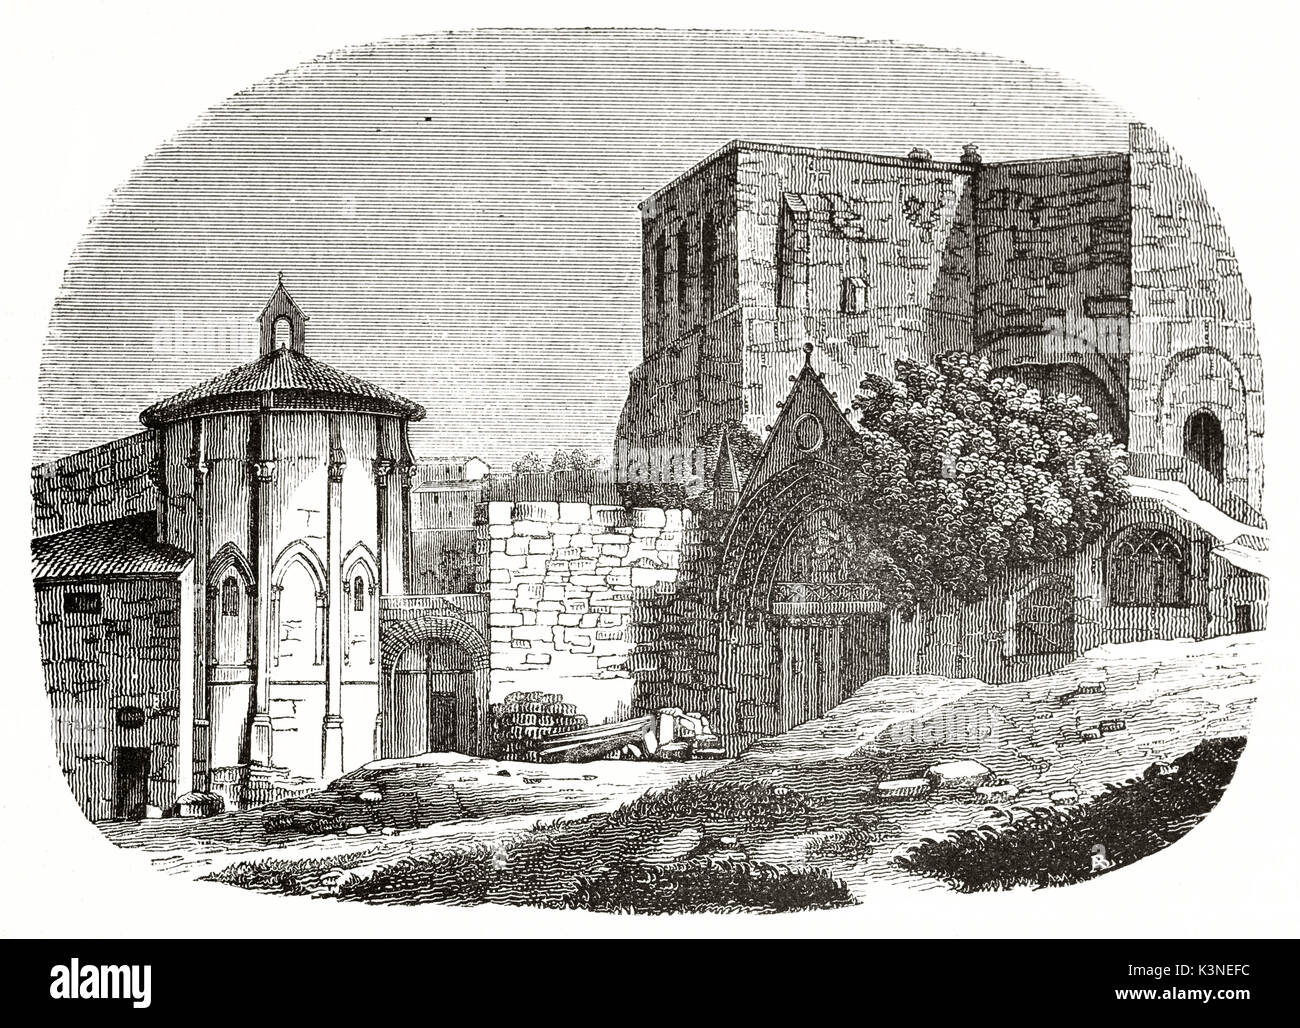 Saint-Emilion monolithische Kirche Eingang Gironde Frankreich angezeigt in einem alten eingraviertem Muster in einem Ovalen Rahmen mit verblichenen Kanten eingefügt. Auf Magasin Pittoresque Paris 1839 veröffentlicht. Stockfoto